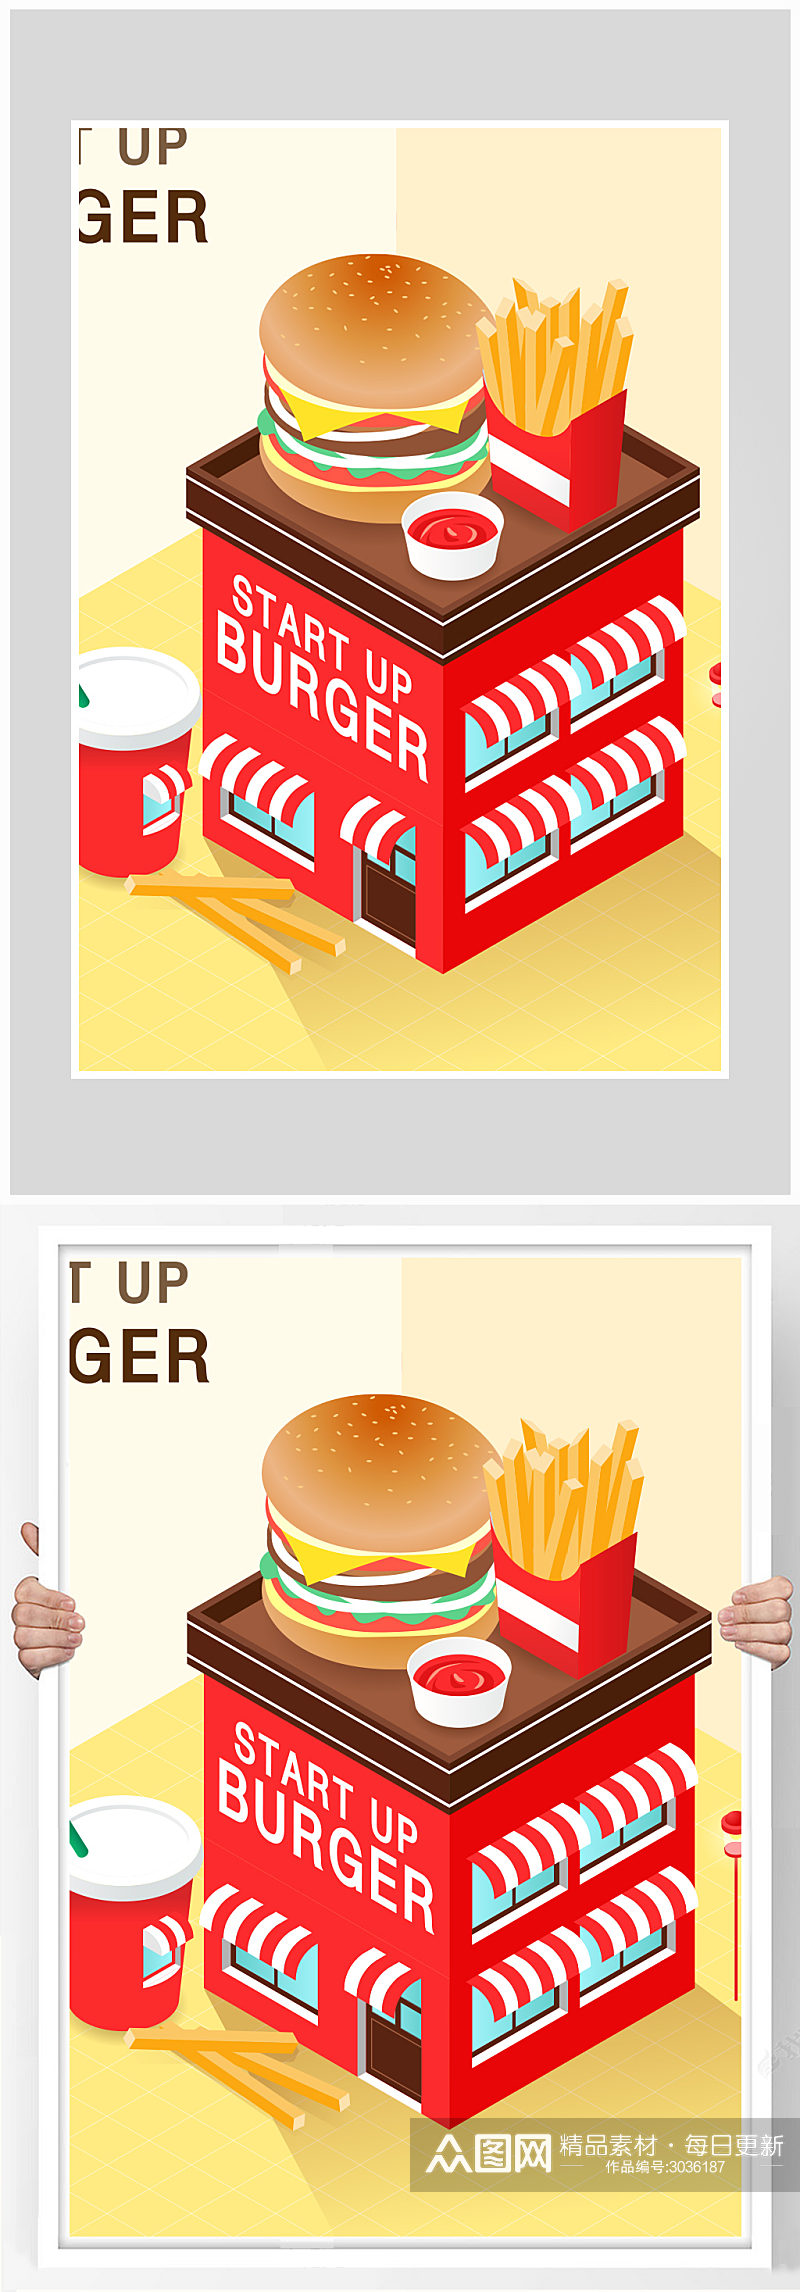 快餐店汉堡薯条海报设计素材